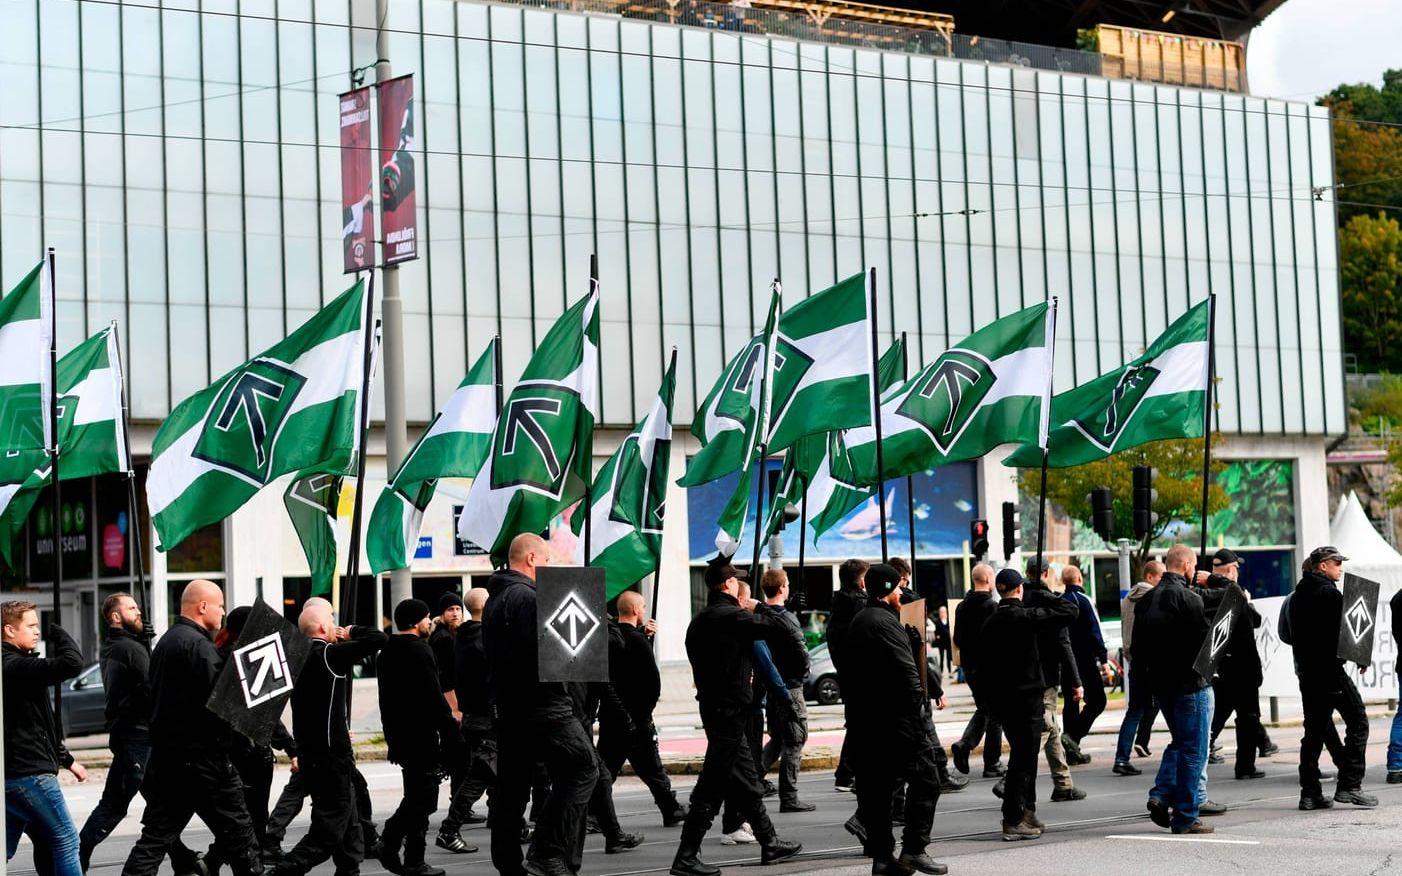 Samtidigt ansluter sig nazister från övriga Norden till Nordiska motståndsrörelsens demonstration. De hoppas själva samla över 1000 nazi-sympatisörer. Bild: Scanpix